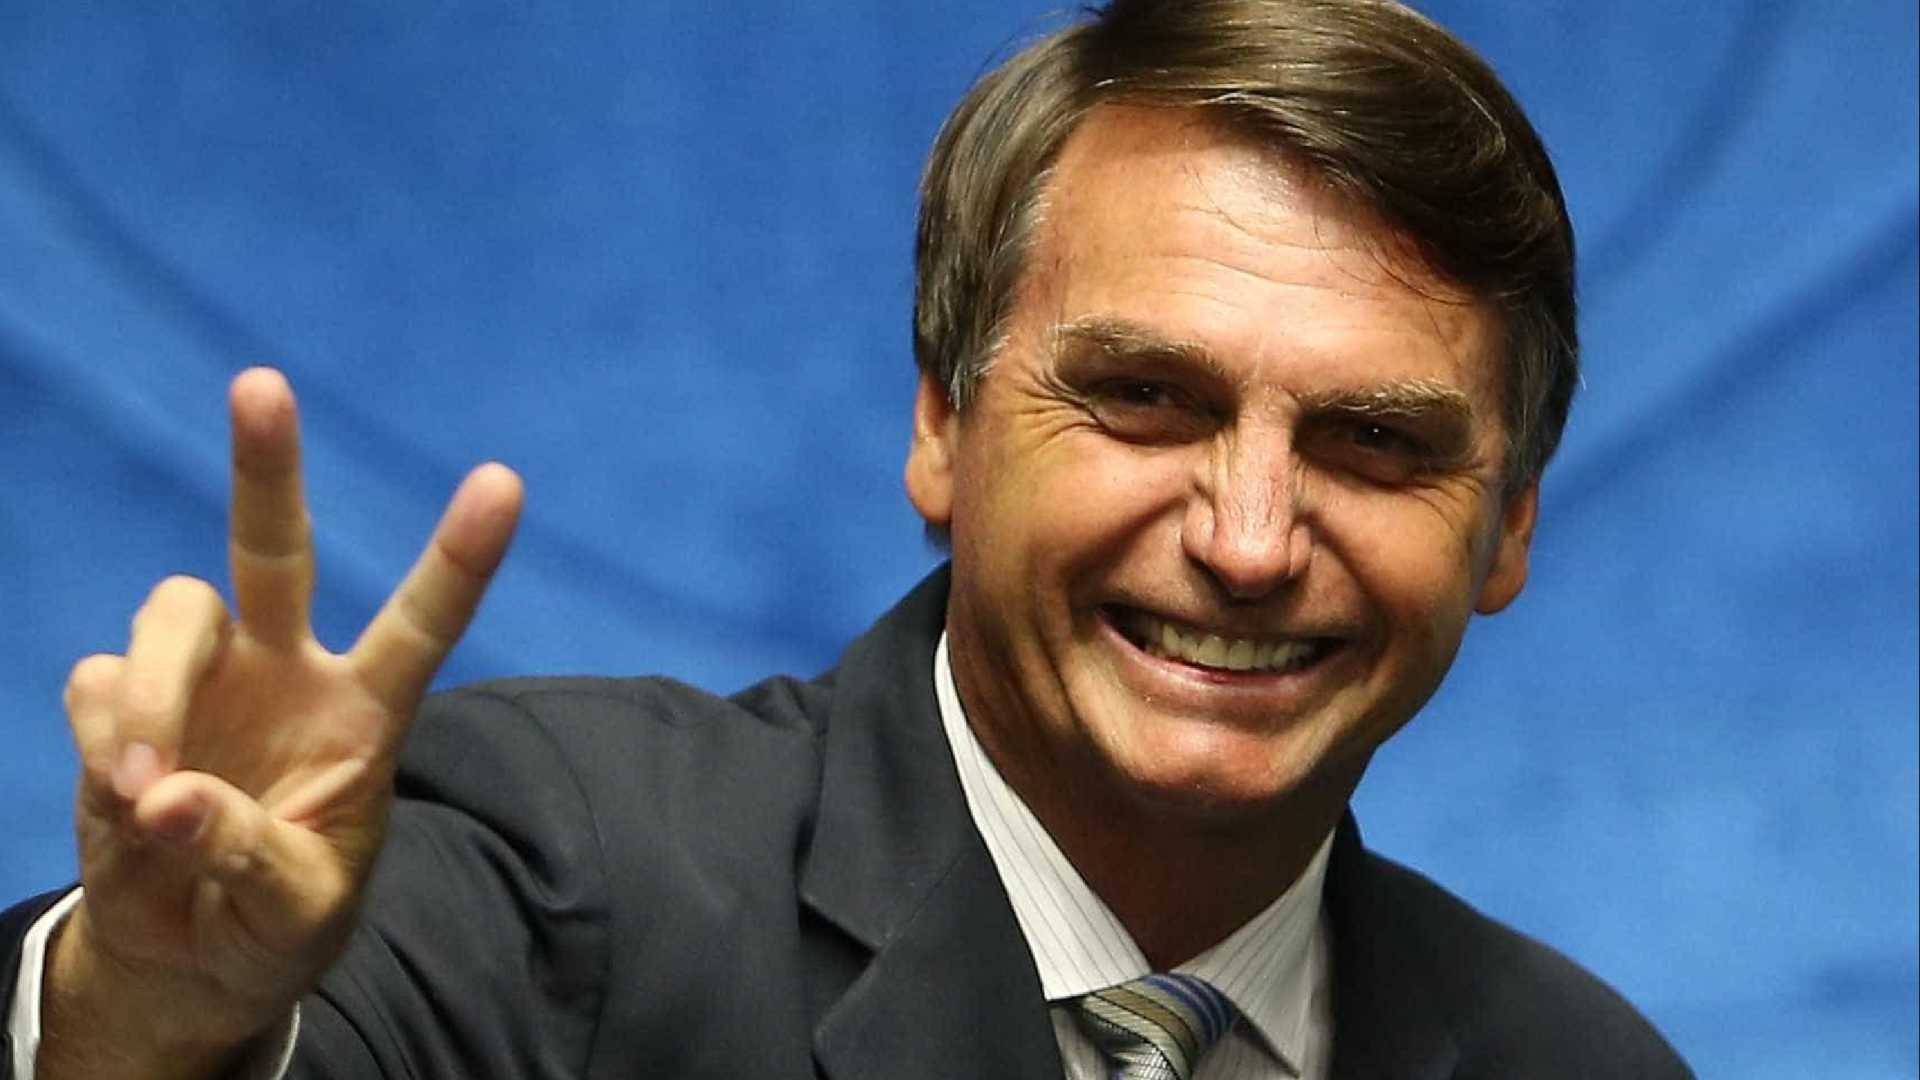 PSL busca candidatas para atrair eleitorado feminino a Bolsonaro